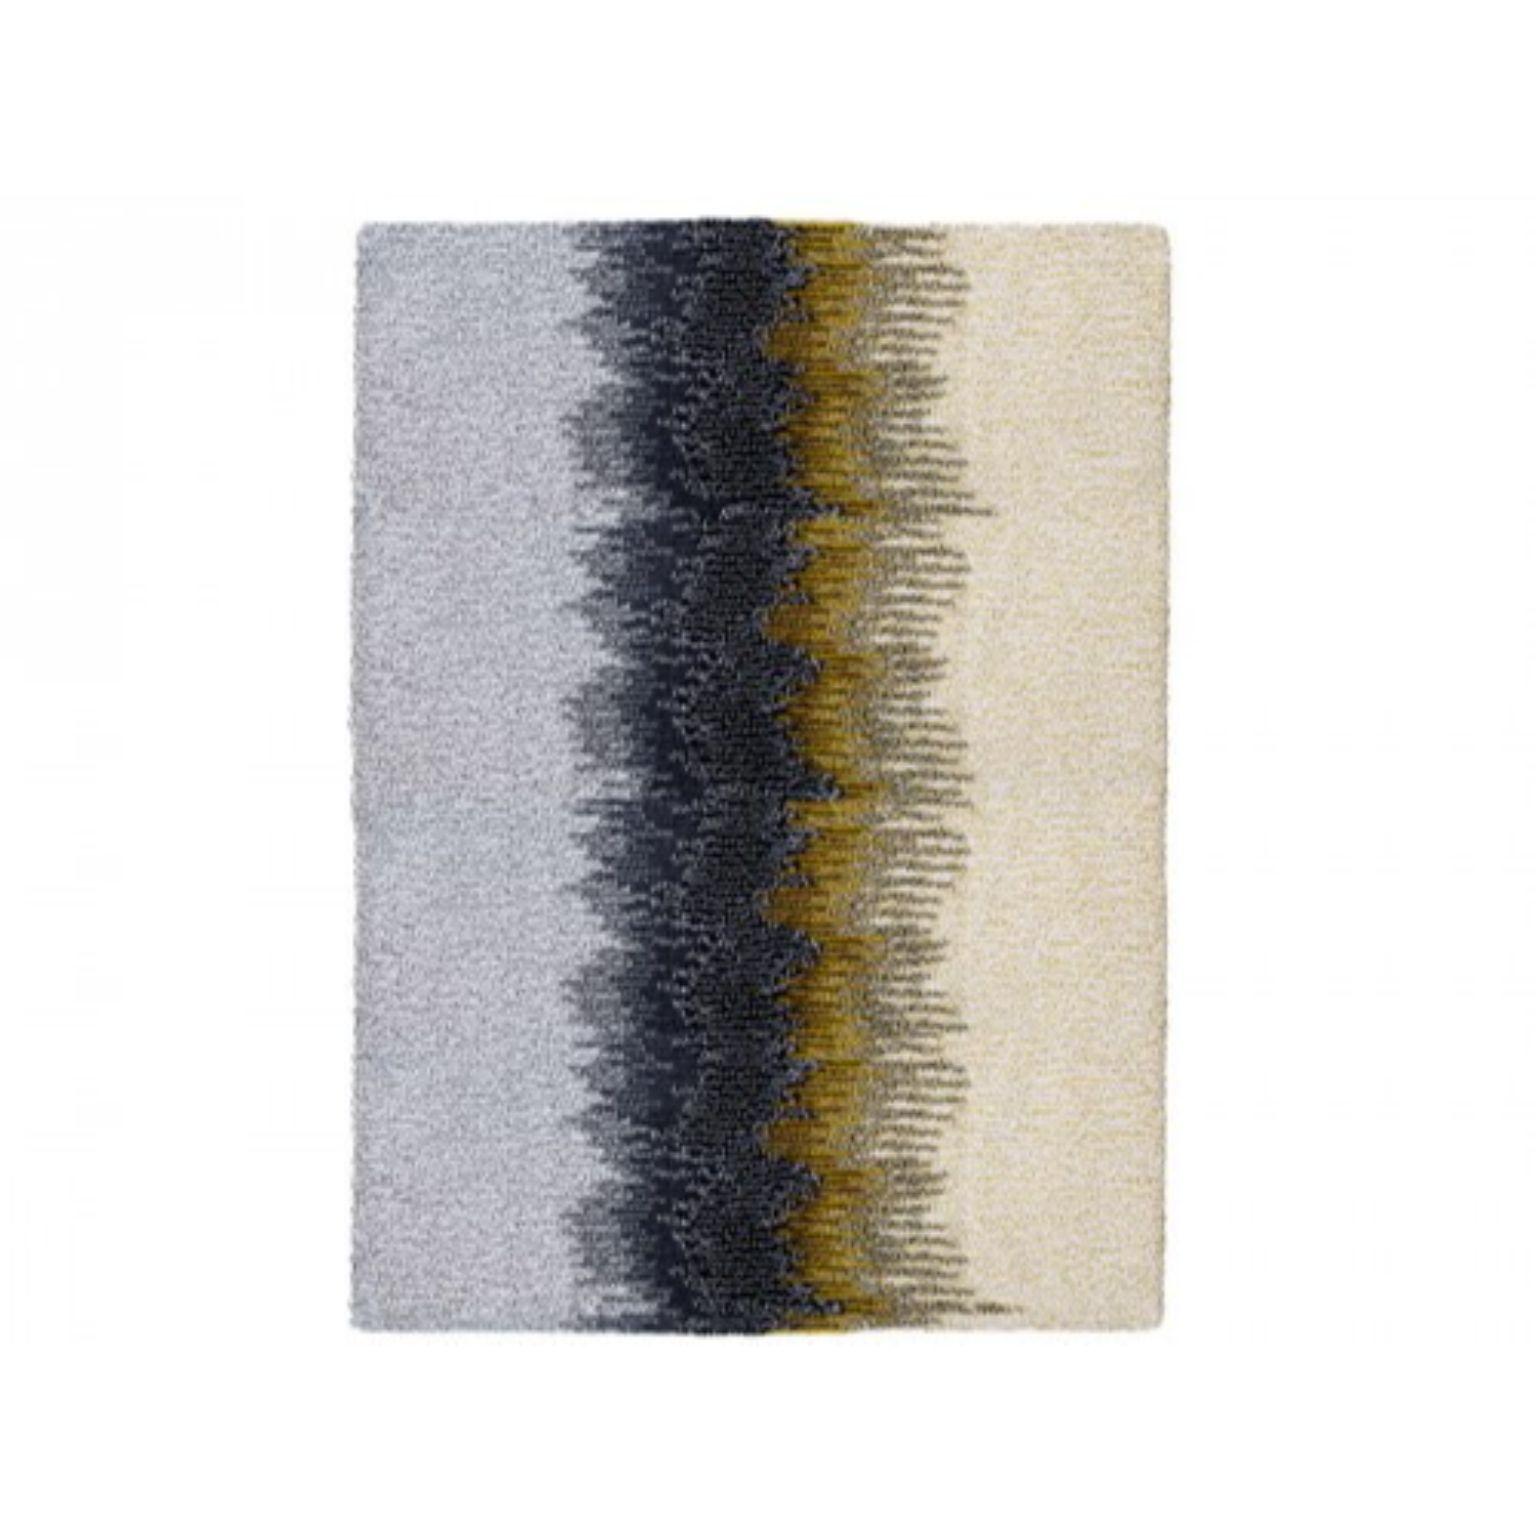 Teppich „Epoca Uno“ von Alissa + Nienke aus Limonenholz 
Abmessungen: B 200 x H 260 cm 
MATERIALIEN: 100% neuseeländische Wolle bester Qualität.
Erhältlich in den Größen: Medium (150 x 200 cm) und Extra Large (300 x 390 cm). Auch in folgenden Farben